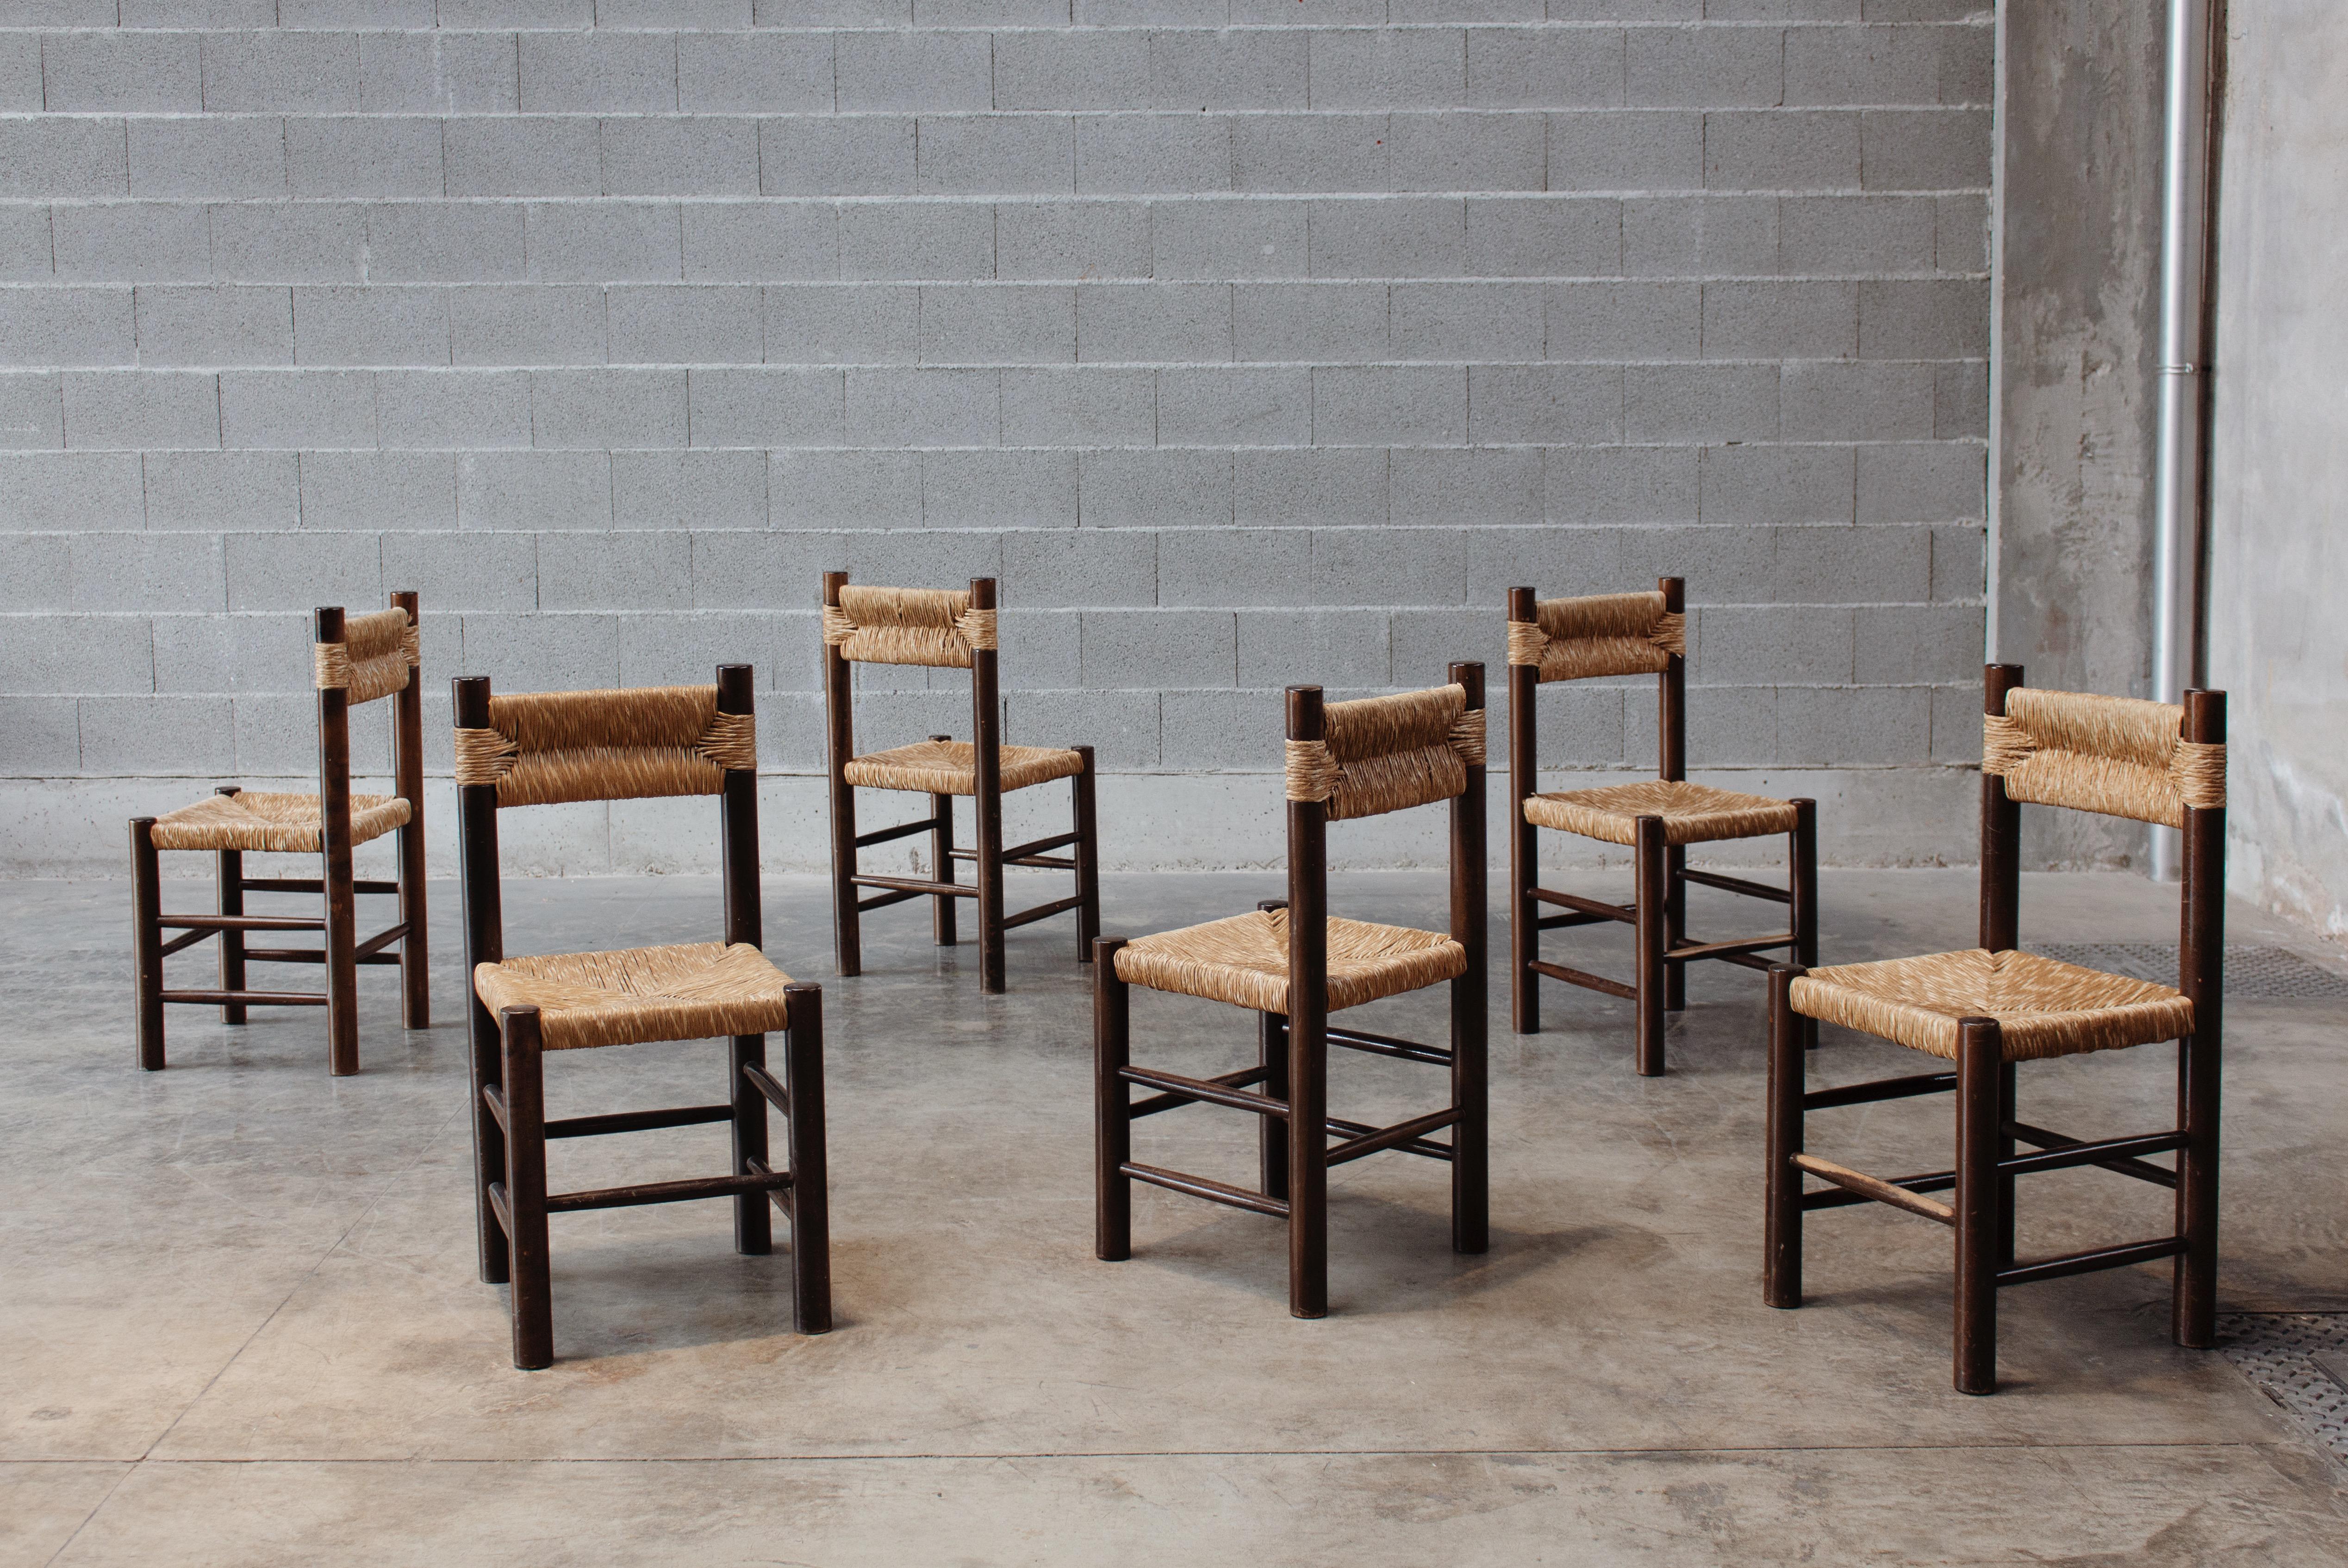 Charlotte Perriand Esszimmerstühle für Robert Sentou, Stroh und Holz, Frankreich, 1964, Satz von sechs.

Die Stühle haben ein schlichtes und zeitloses Design. Die ausgefallene Rückenlehne und der Sitz aus Stroh bilden zusammen mit der Struktur aus